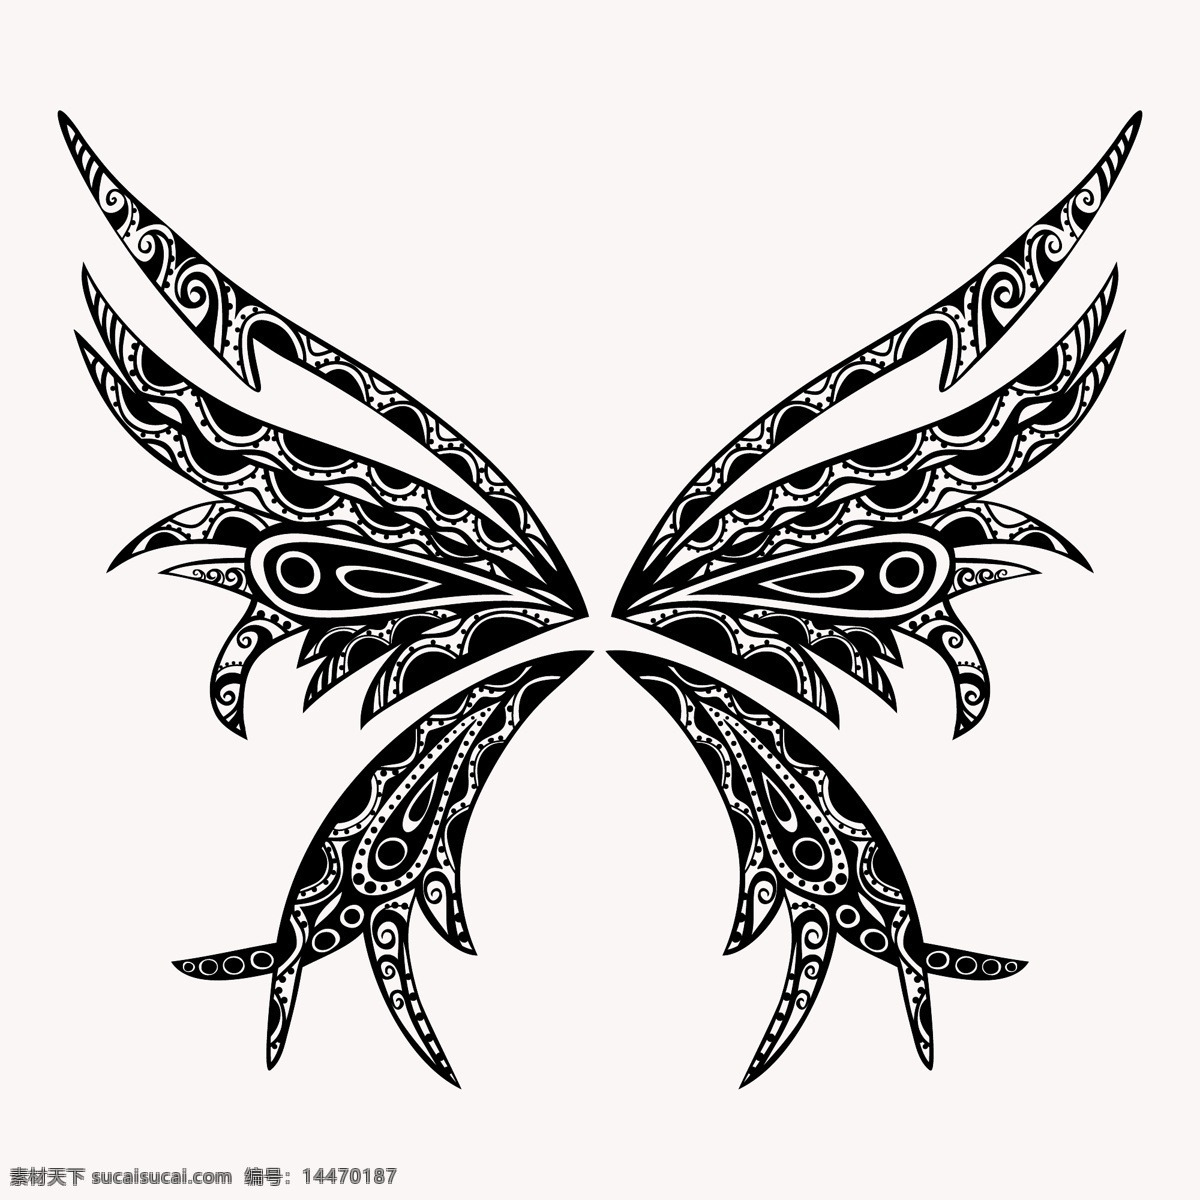 抽象 蝴蝶 纹身 图案 蝴蝶纹身 创意 时尚 花纹 源文件 蝴蝶矢量图 白色